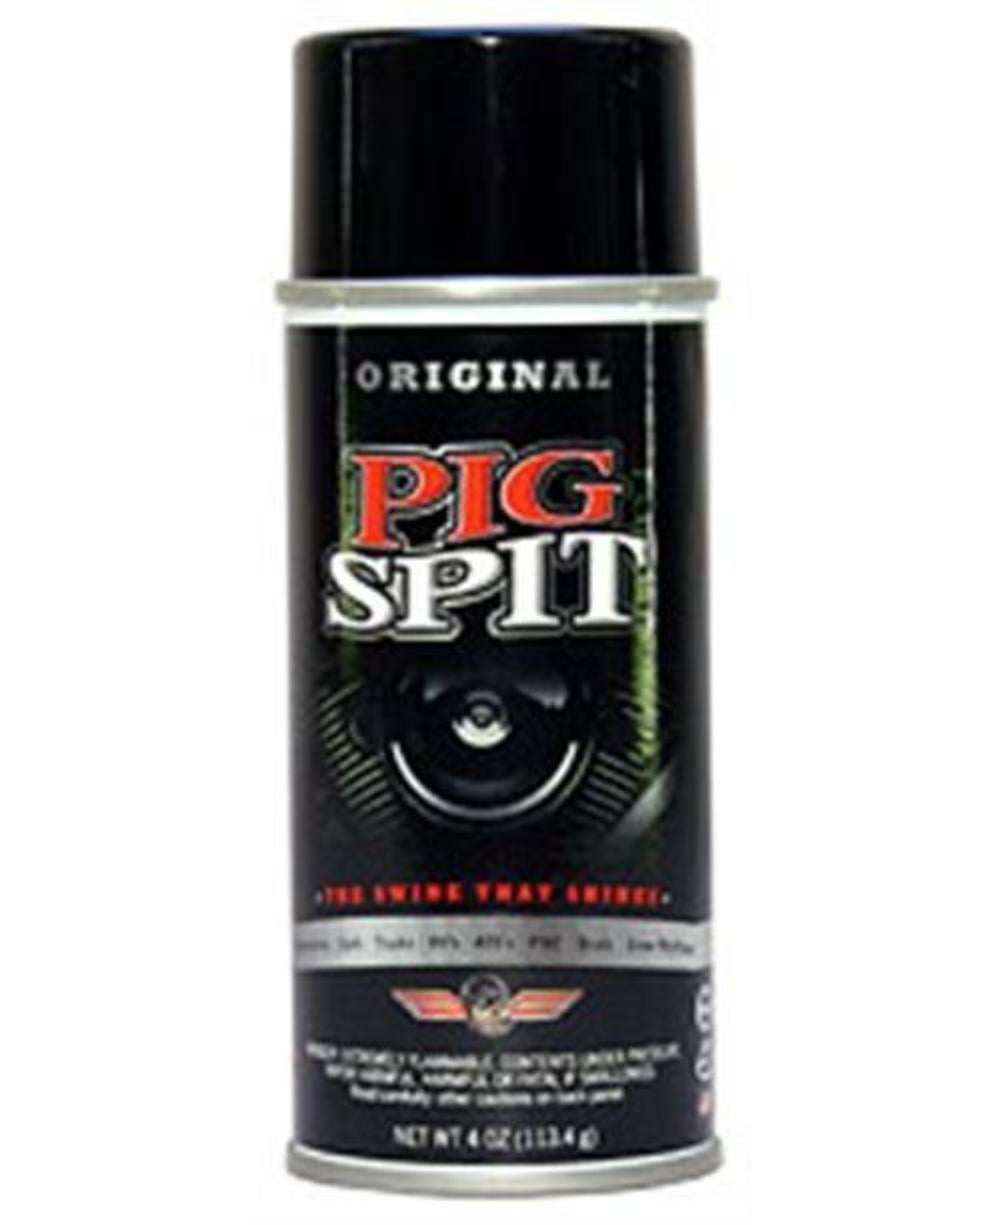 Pig Spit Detailing Spray